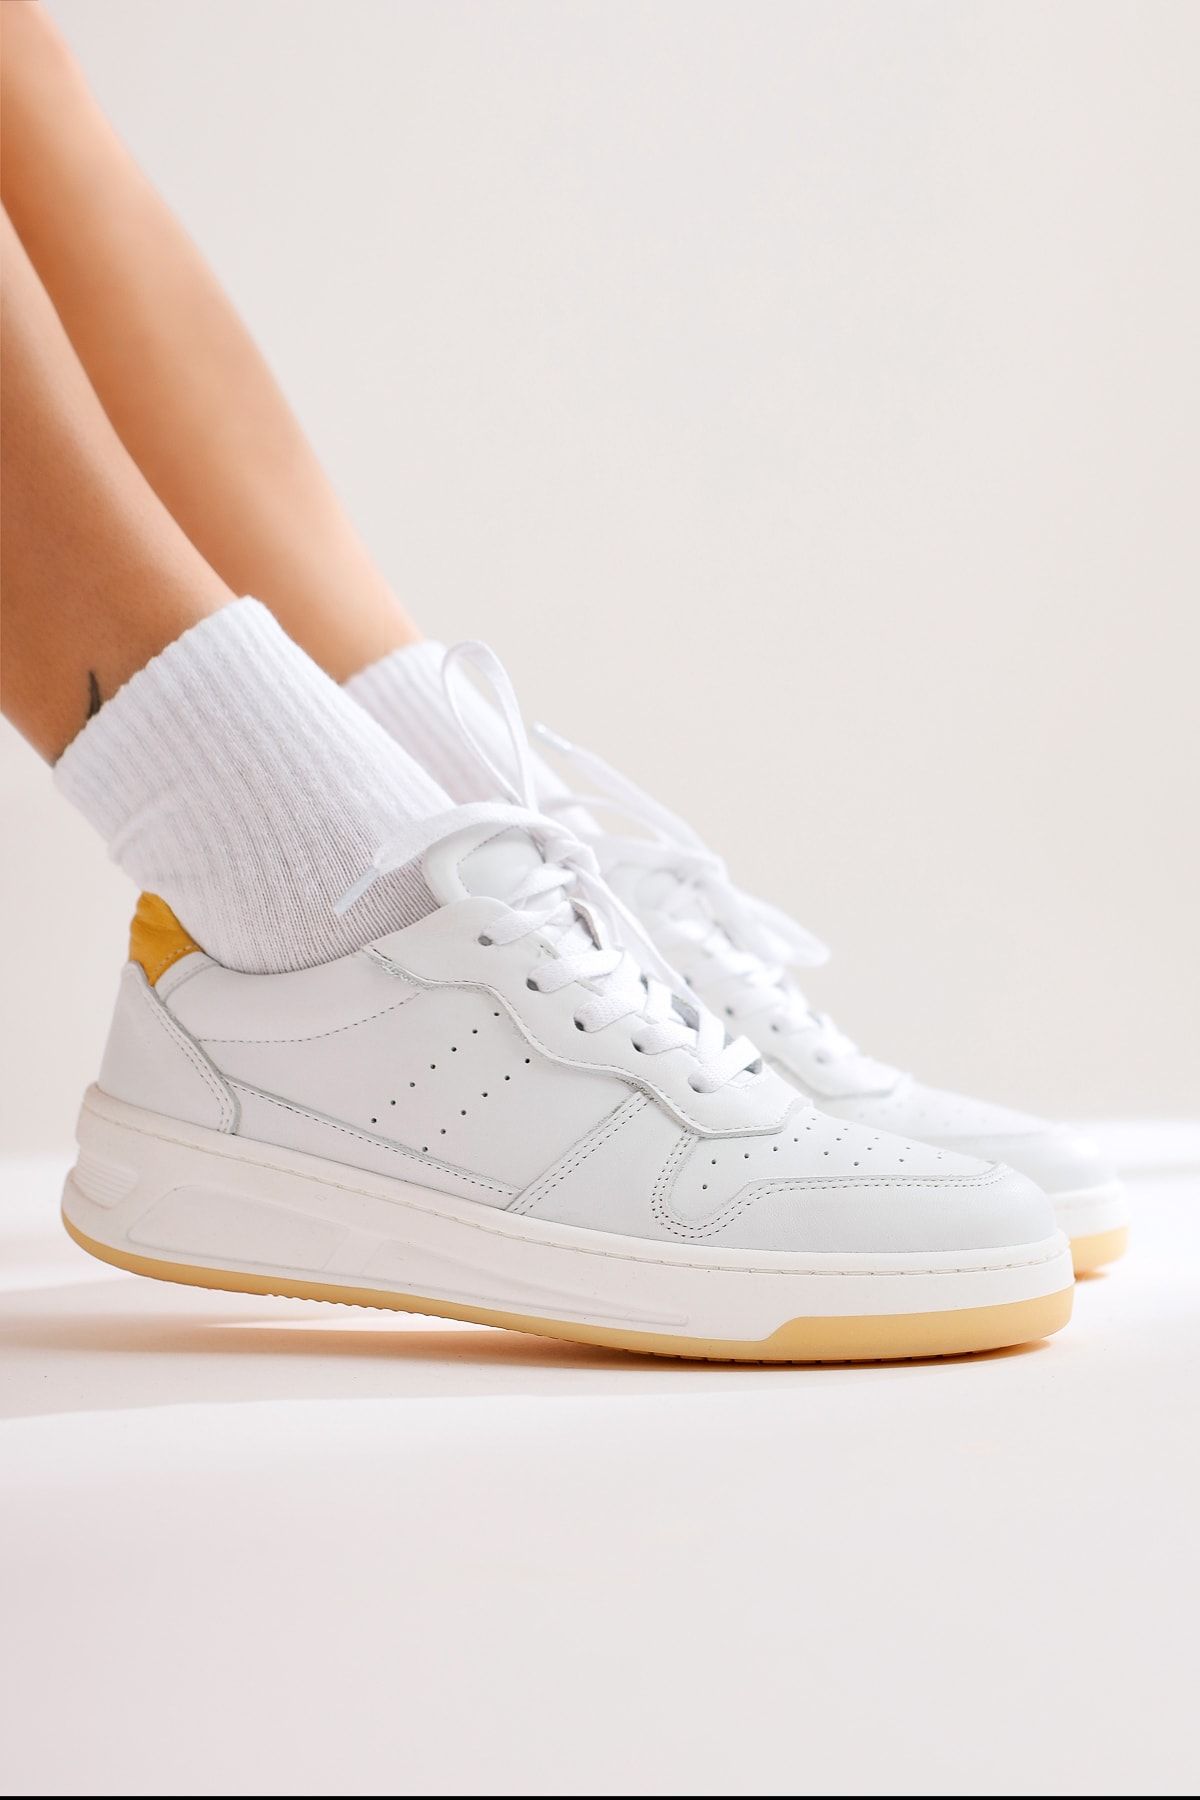 Limoya Hakiki Deri Vasty Beyaz Sneakers Spor Ayakkabı